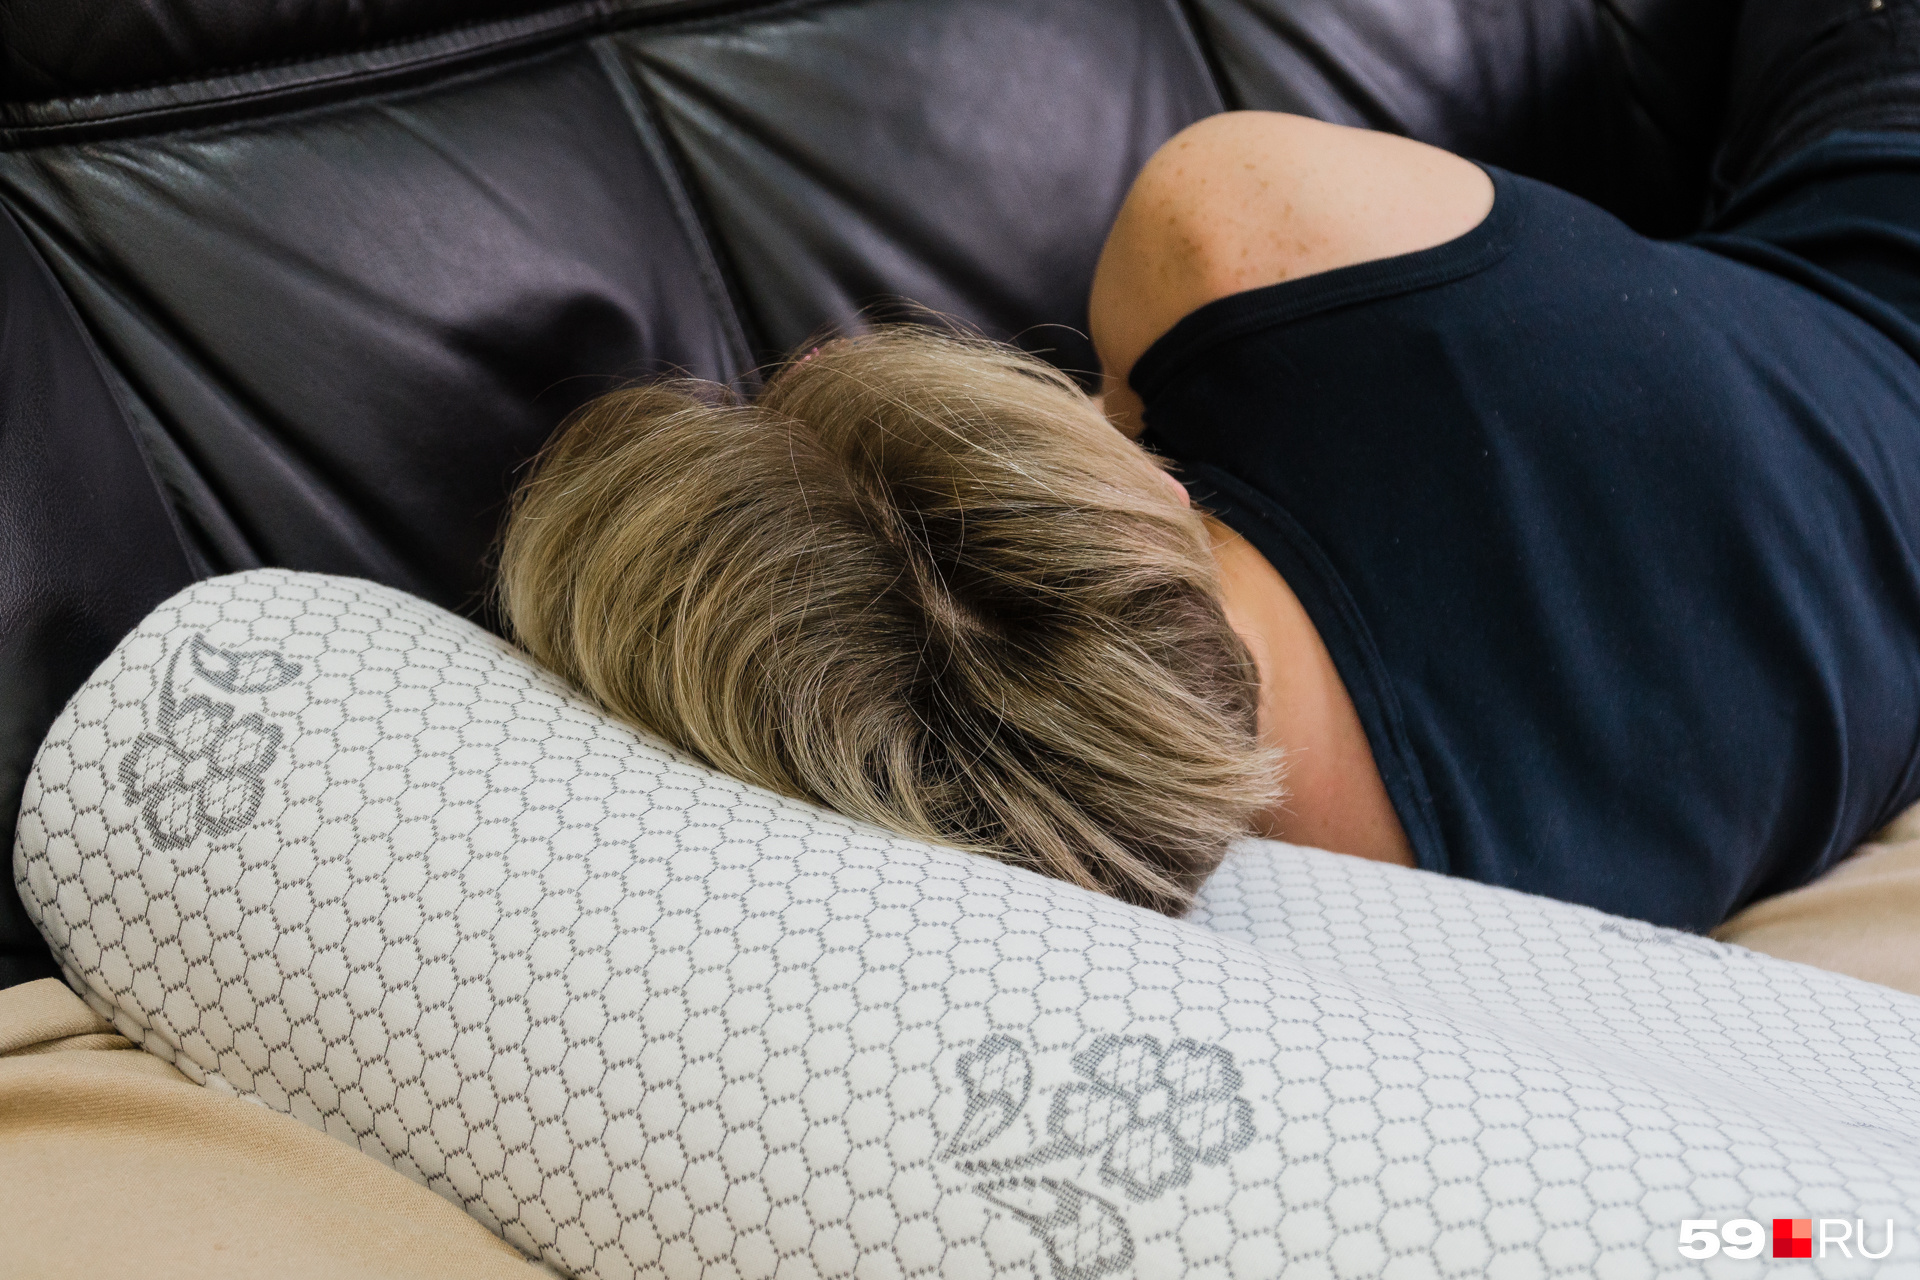 Ортопедическая подушка позволяет размещать голову и шею во время сна правильно